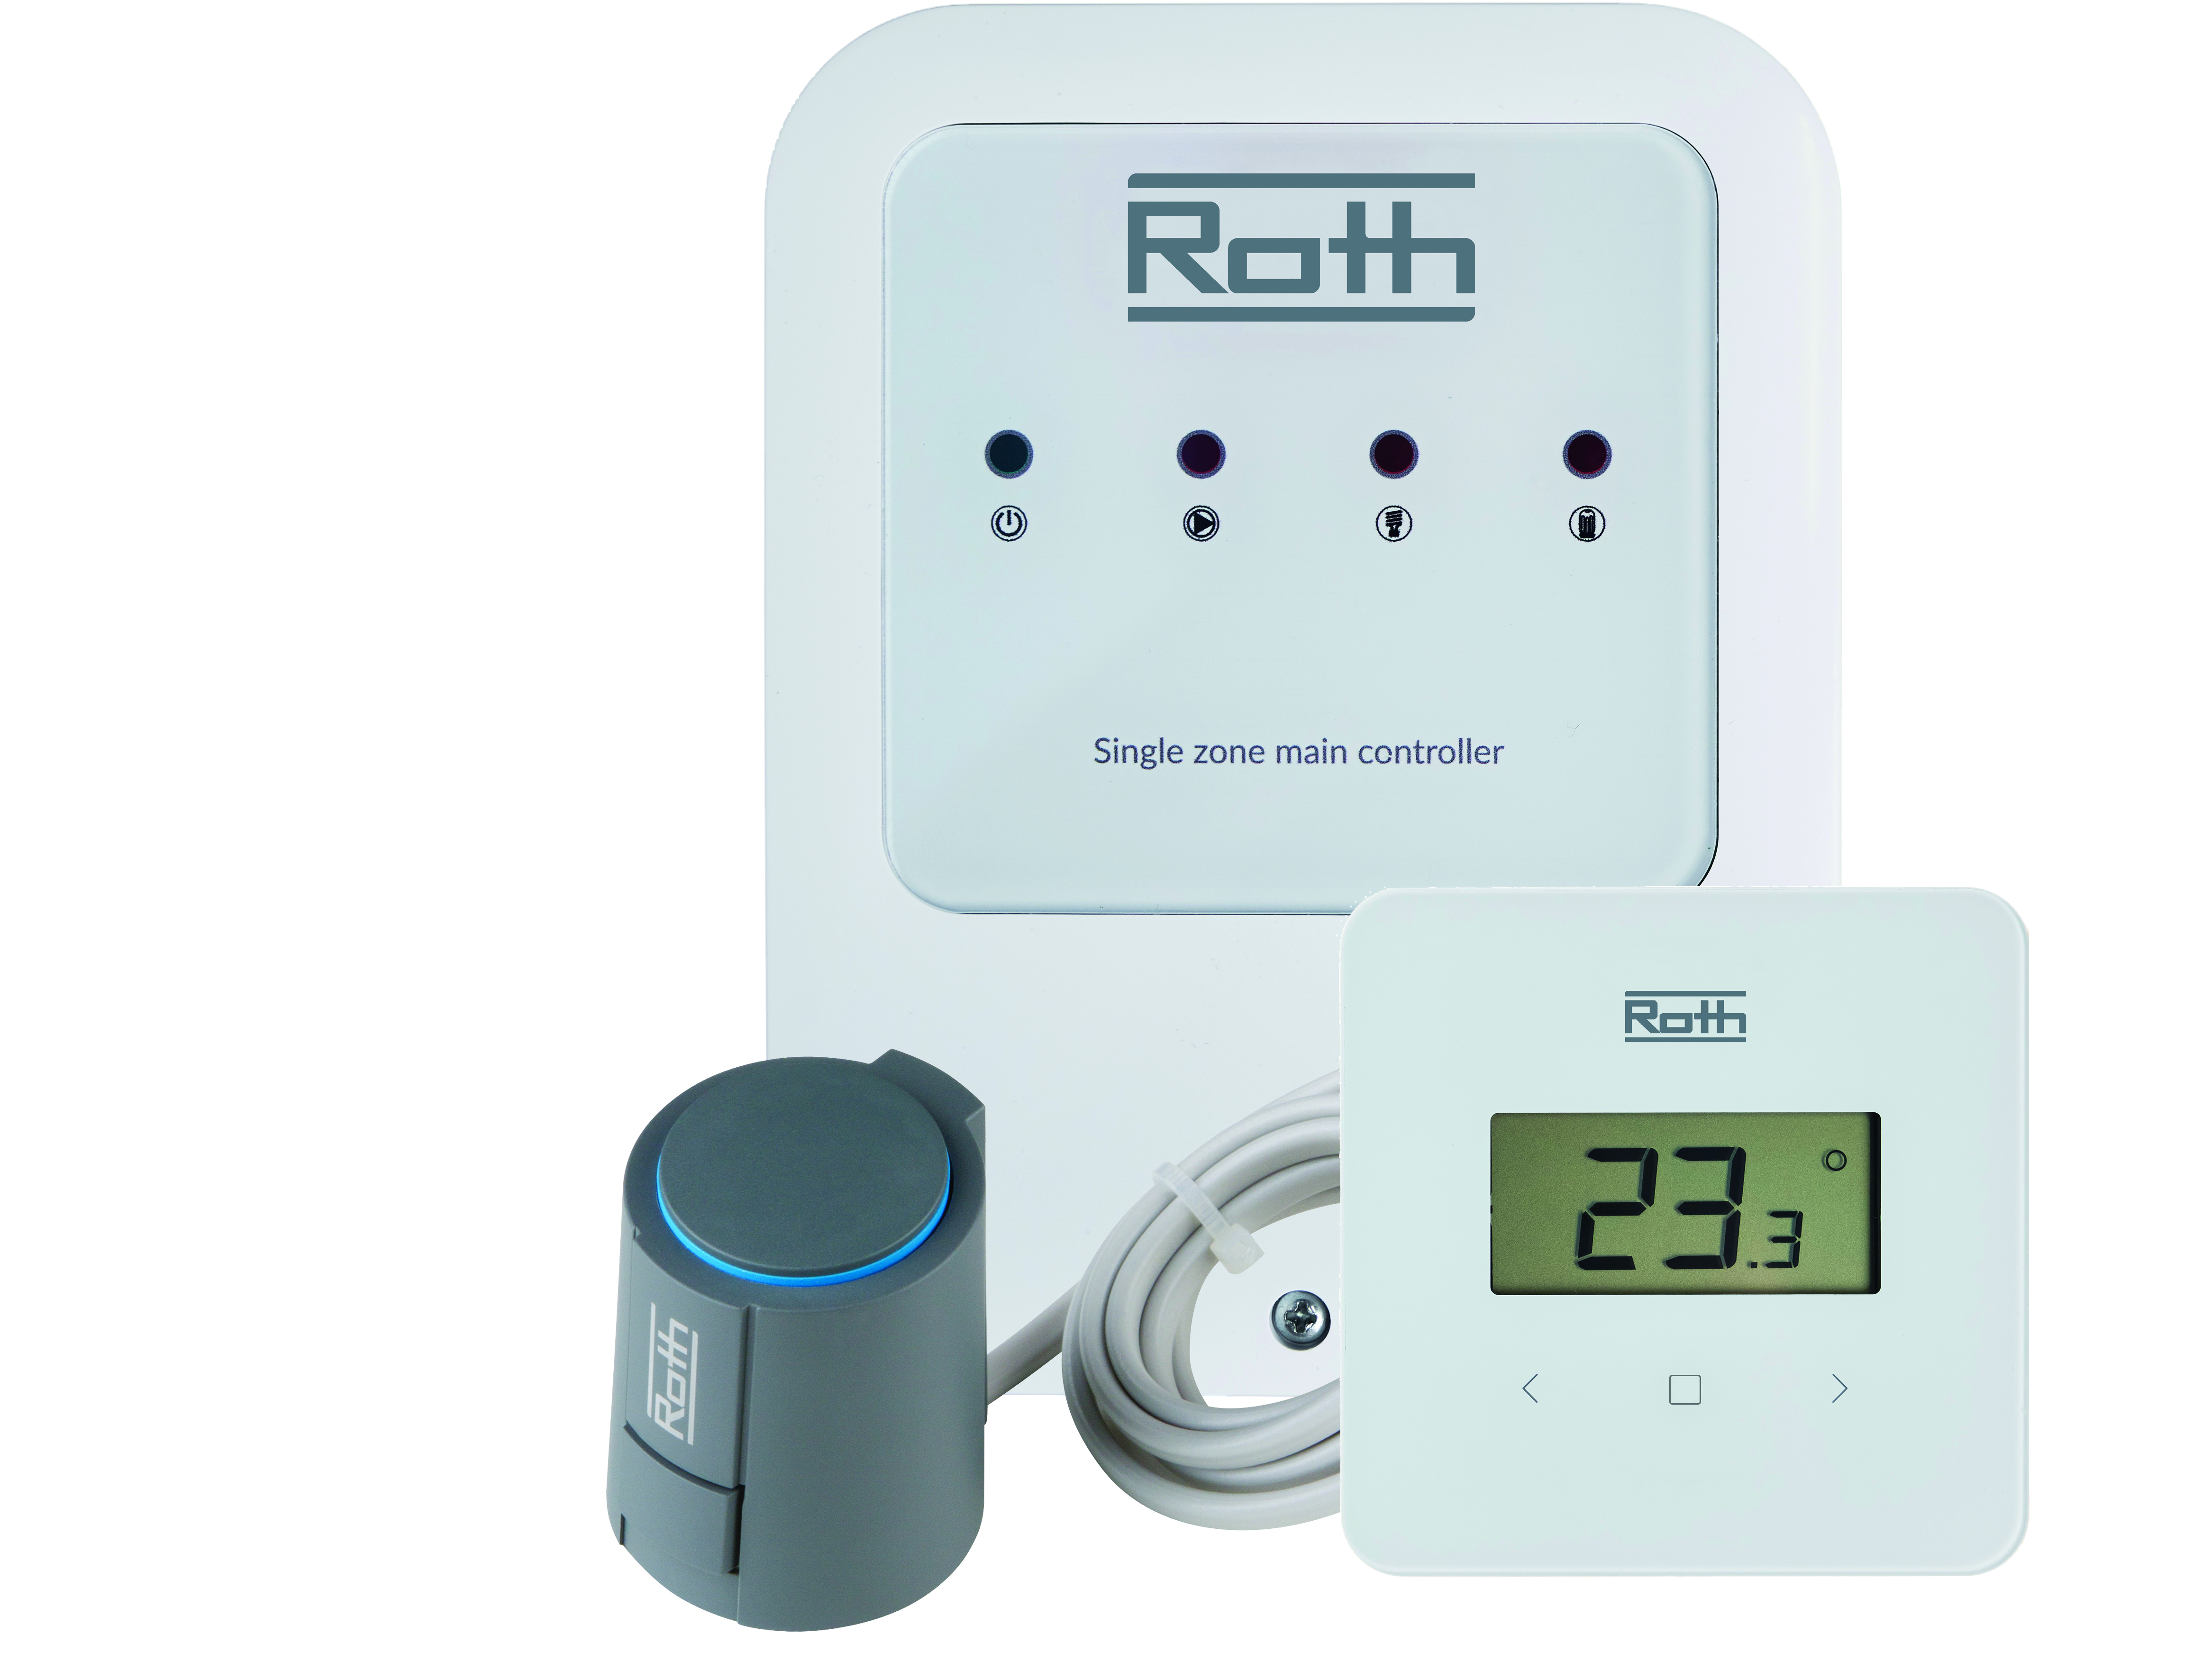 Roth trådløs regulering en kurs inkl reg motor digital termostat SL | Dahl.no